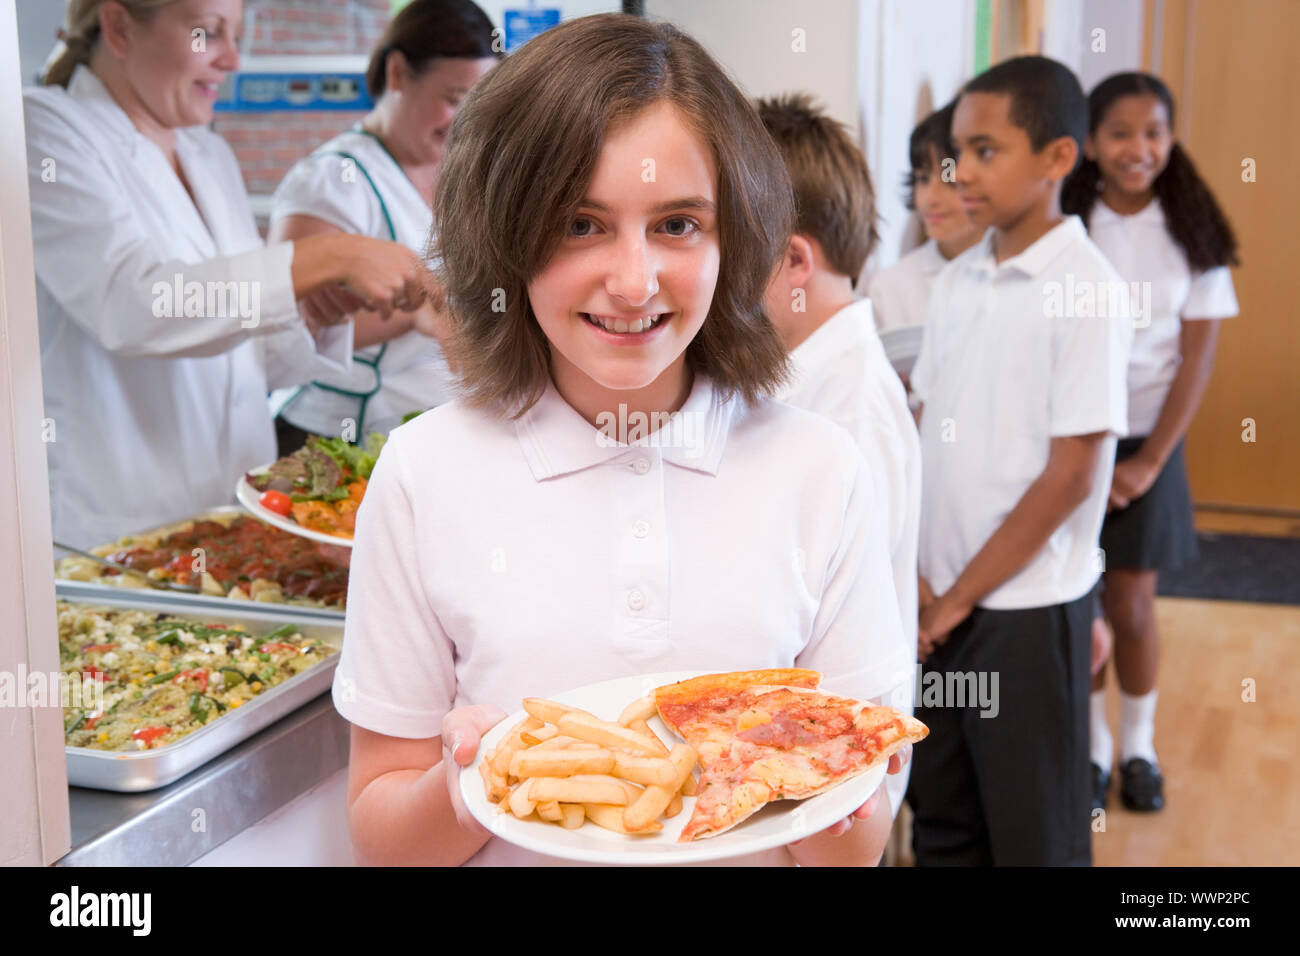 Schüler in der Cafeteria Schlange mit einem hält ihre gesunde Mahlzeit und Blick in die Kamera (Schärfentiefe) Stockfoto